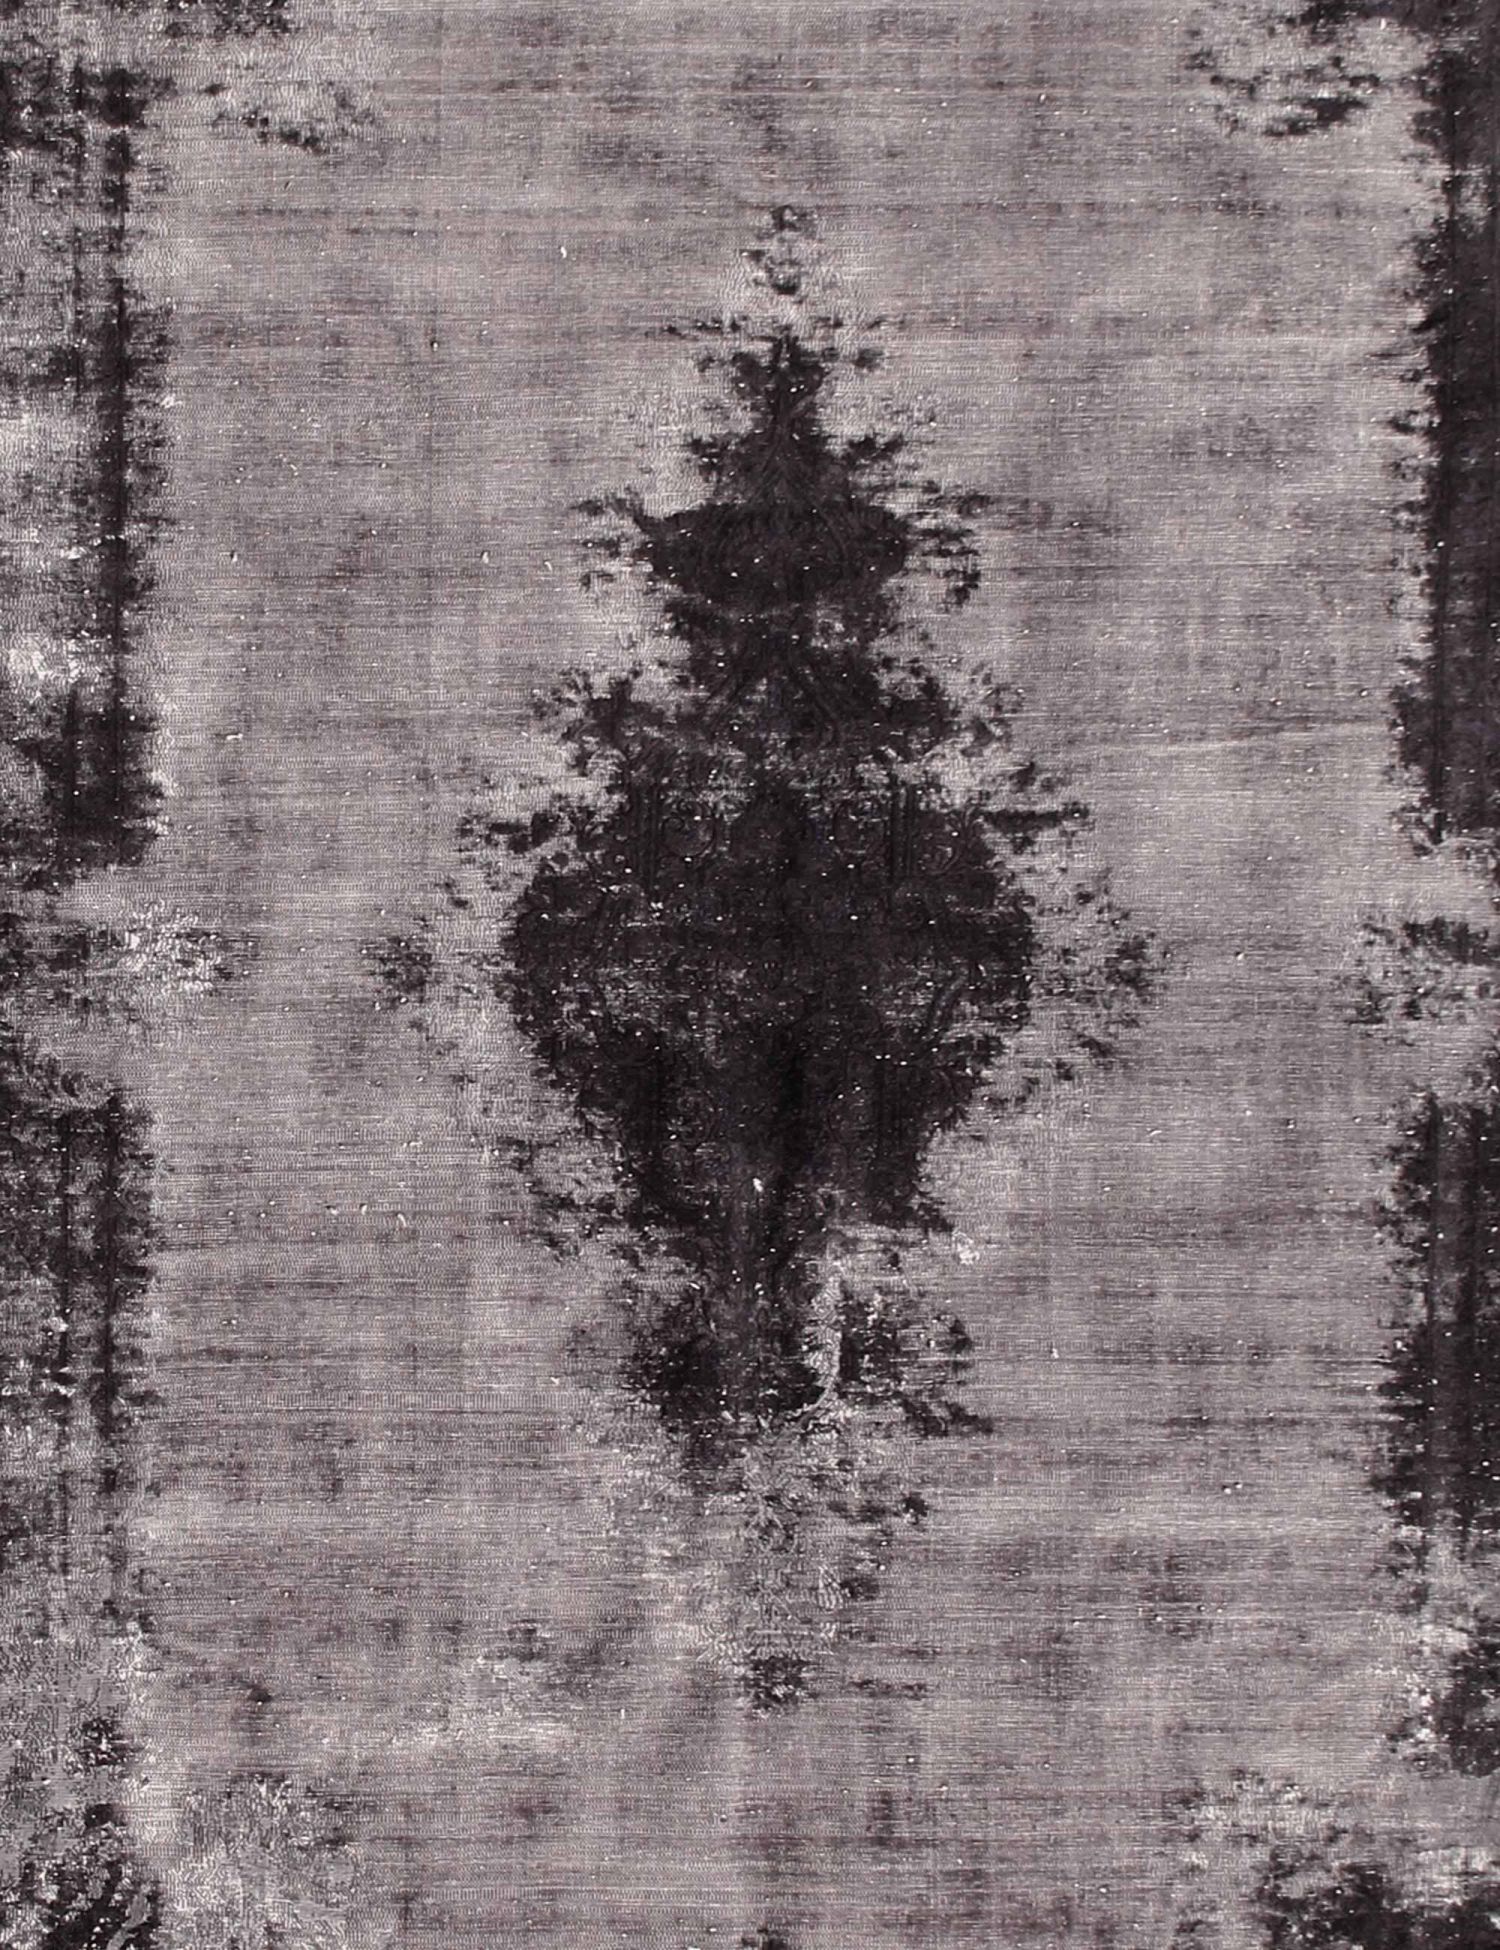 Persischer Vintage Teppich  schwarz <br/>392 x 200 cm